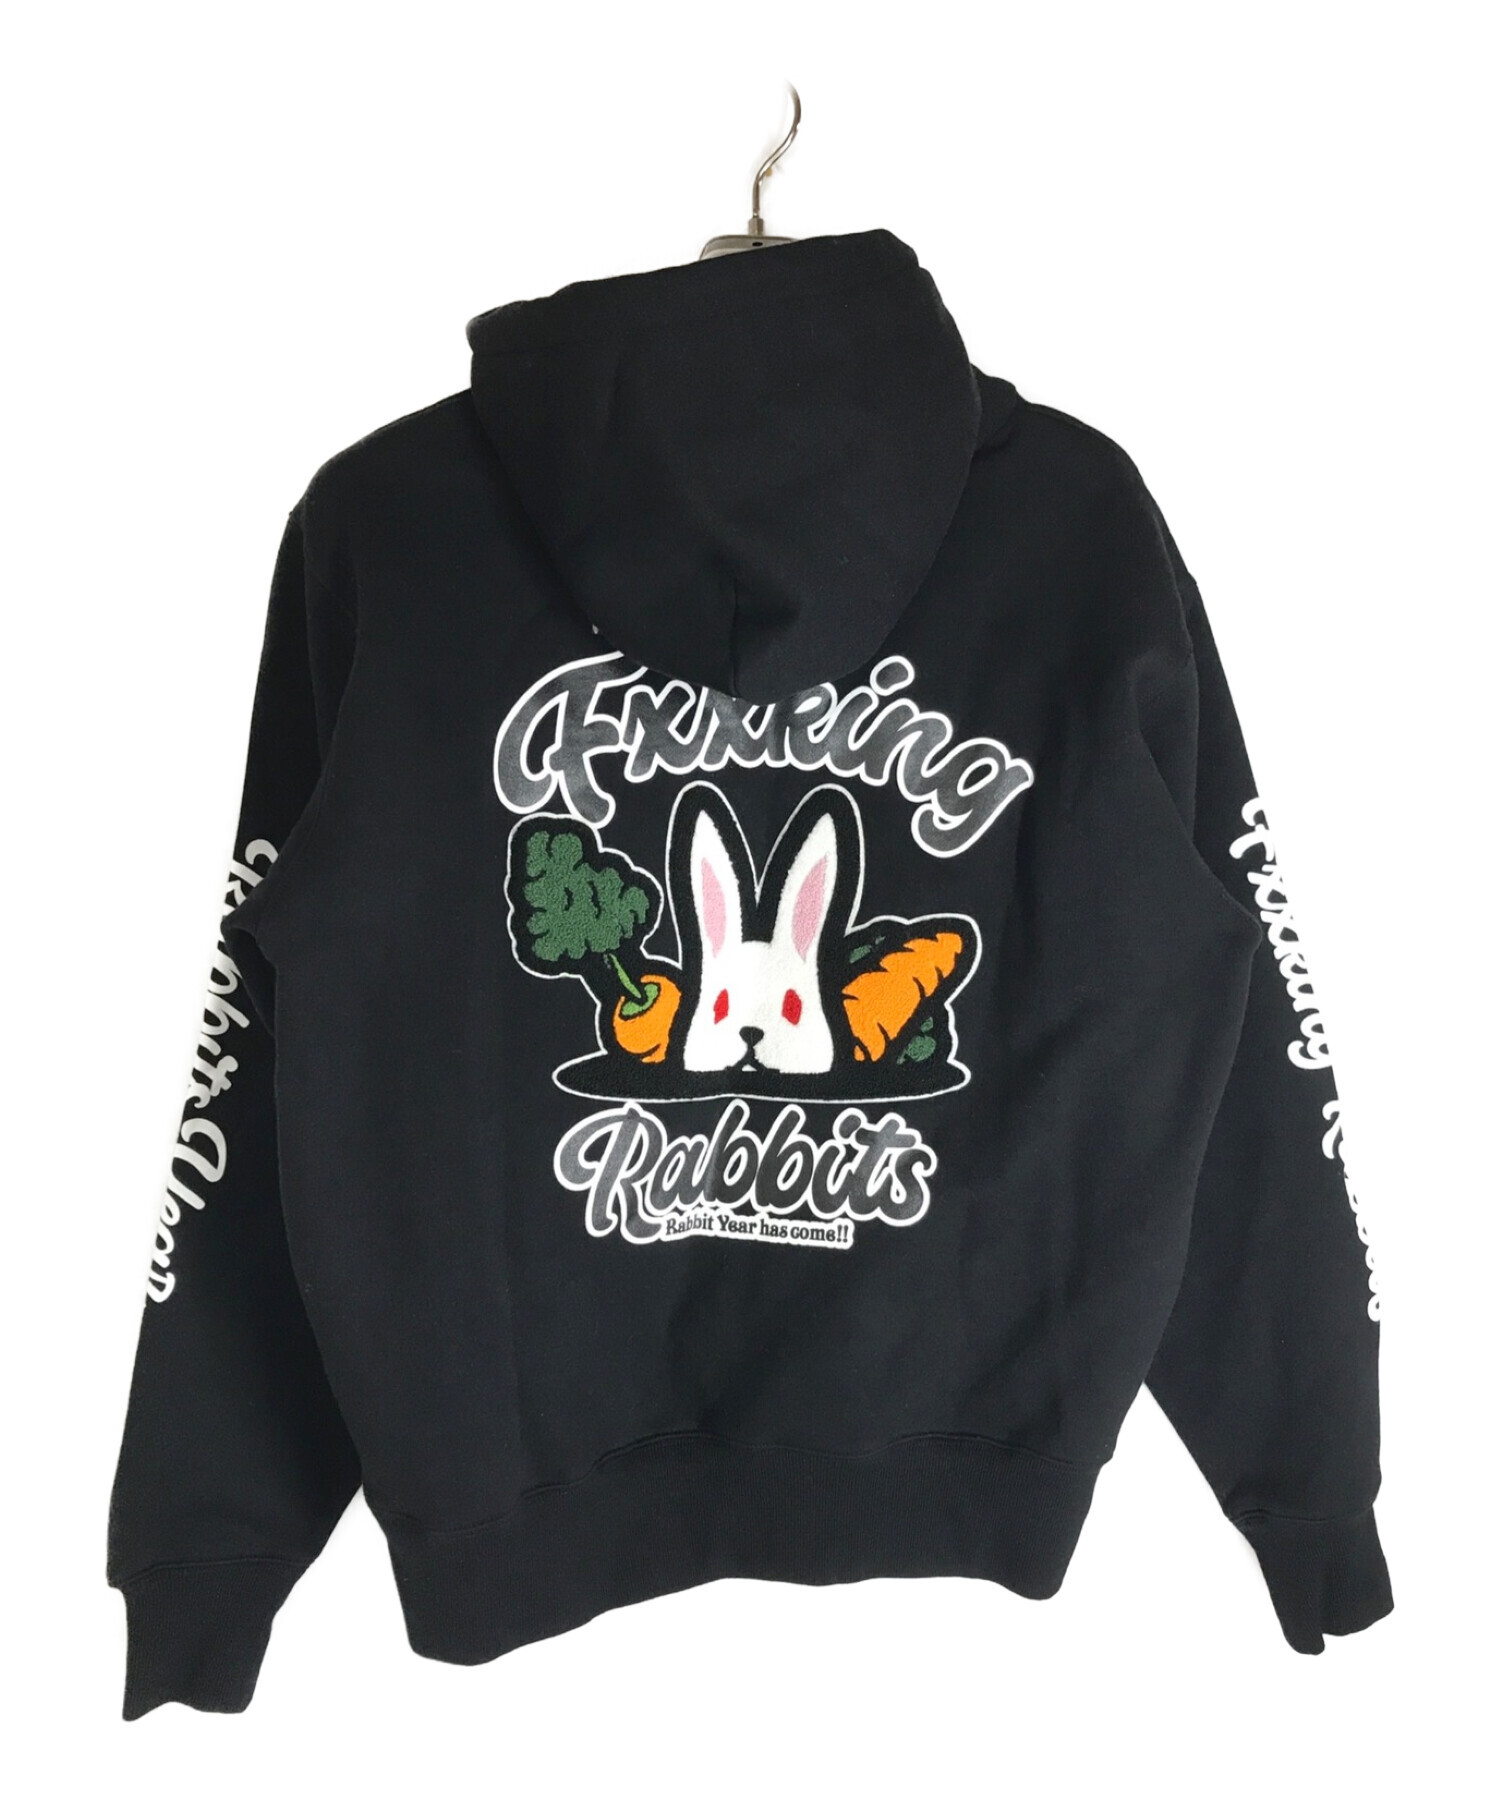 FR2 (ファッキングラビッツ) chenille rabbit hoodie ブラック サイズ:L